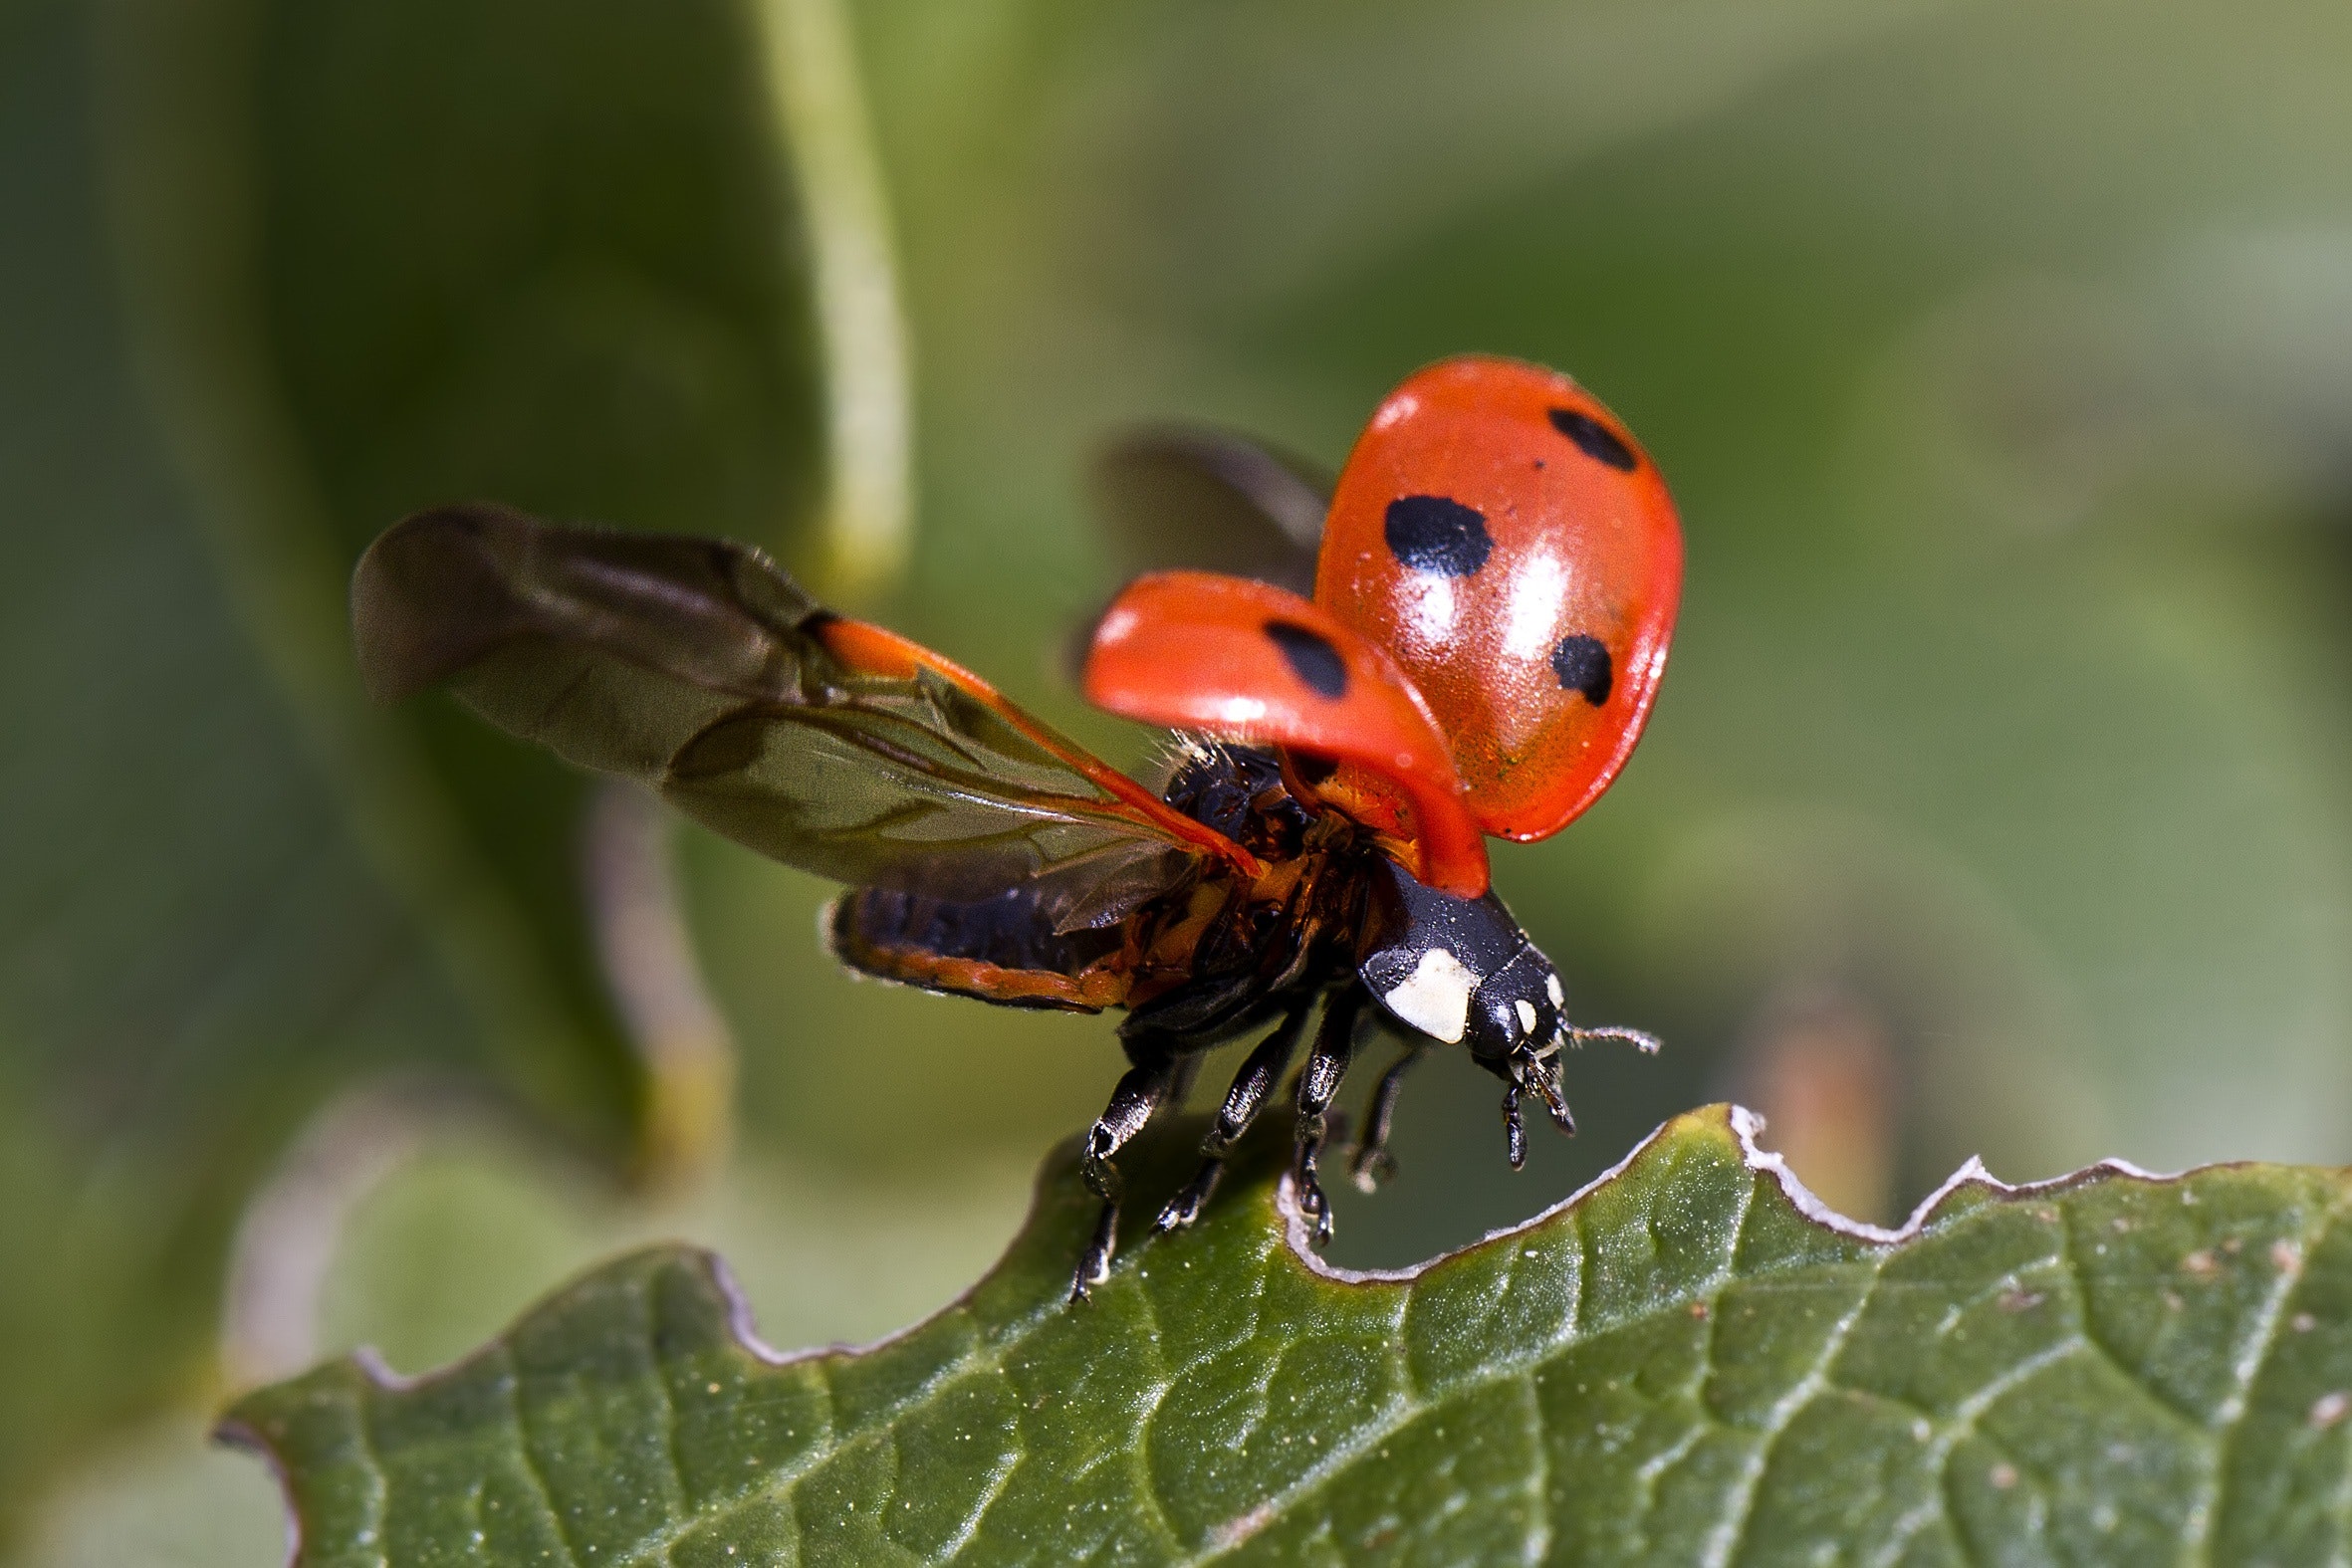 These fold-up robots fly just like ladybugs